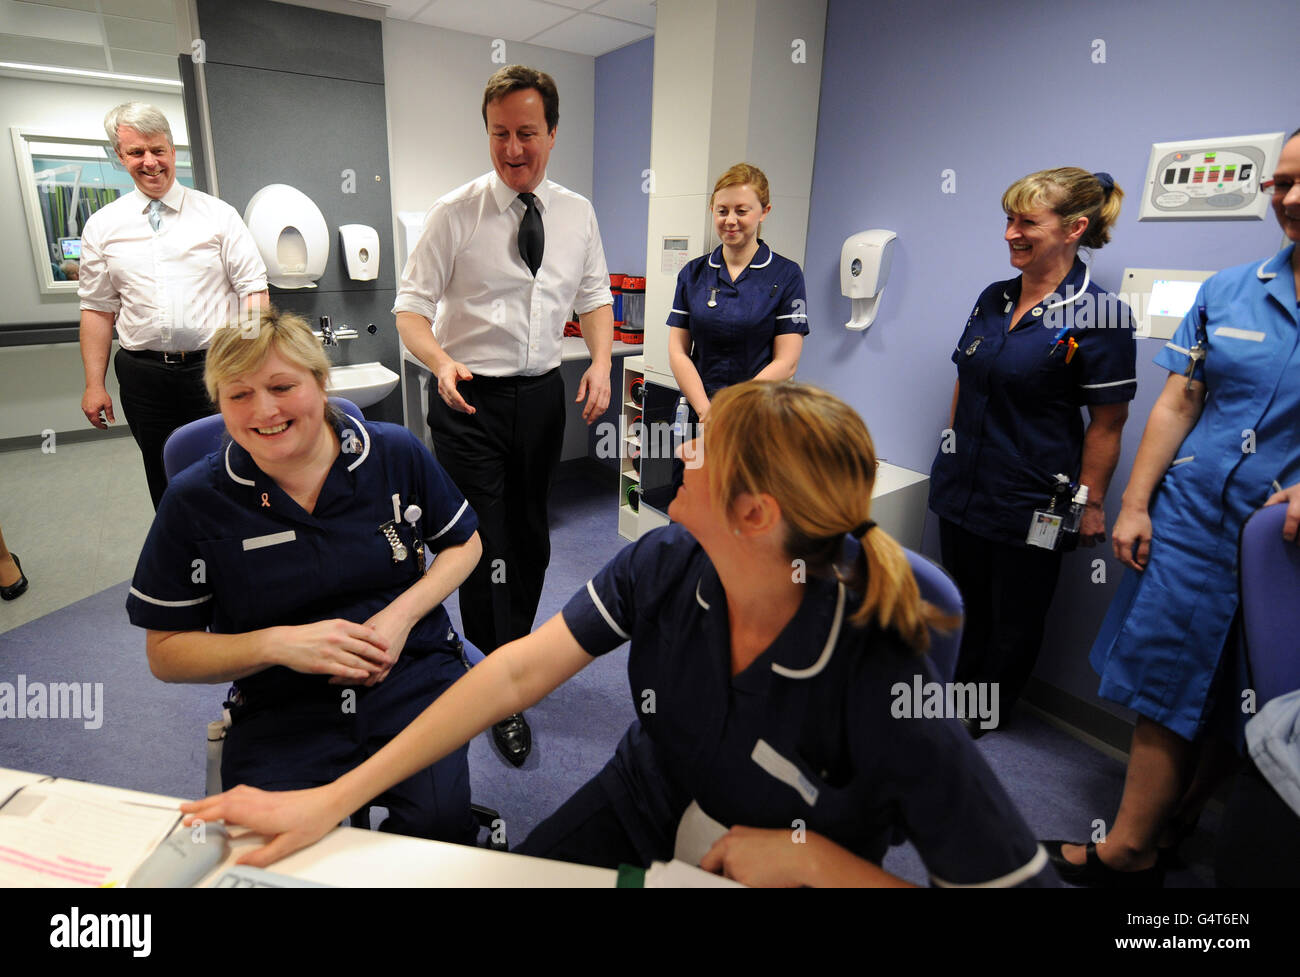 Premierminister David Cameron und Gesundheitsminister Andrew Lansley (links) treffen Krankenschwestern während eines Besuchs im Royal Salford Hospital in Manchester. Stockfoto